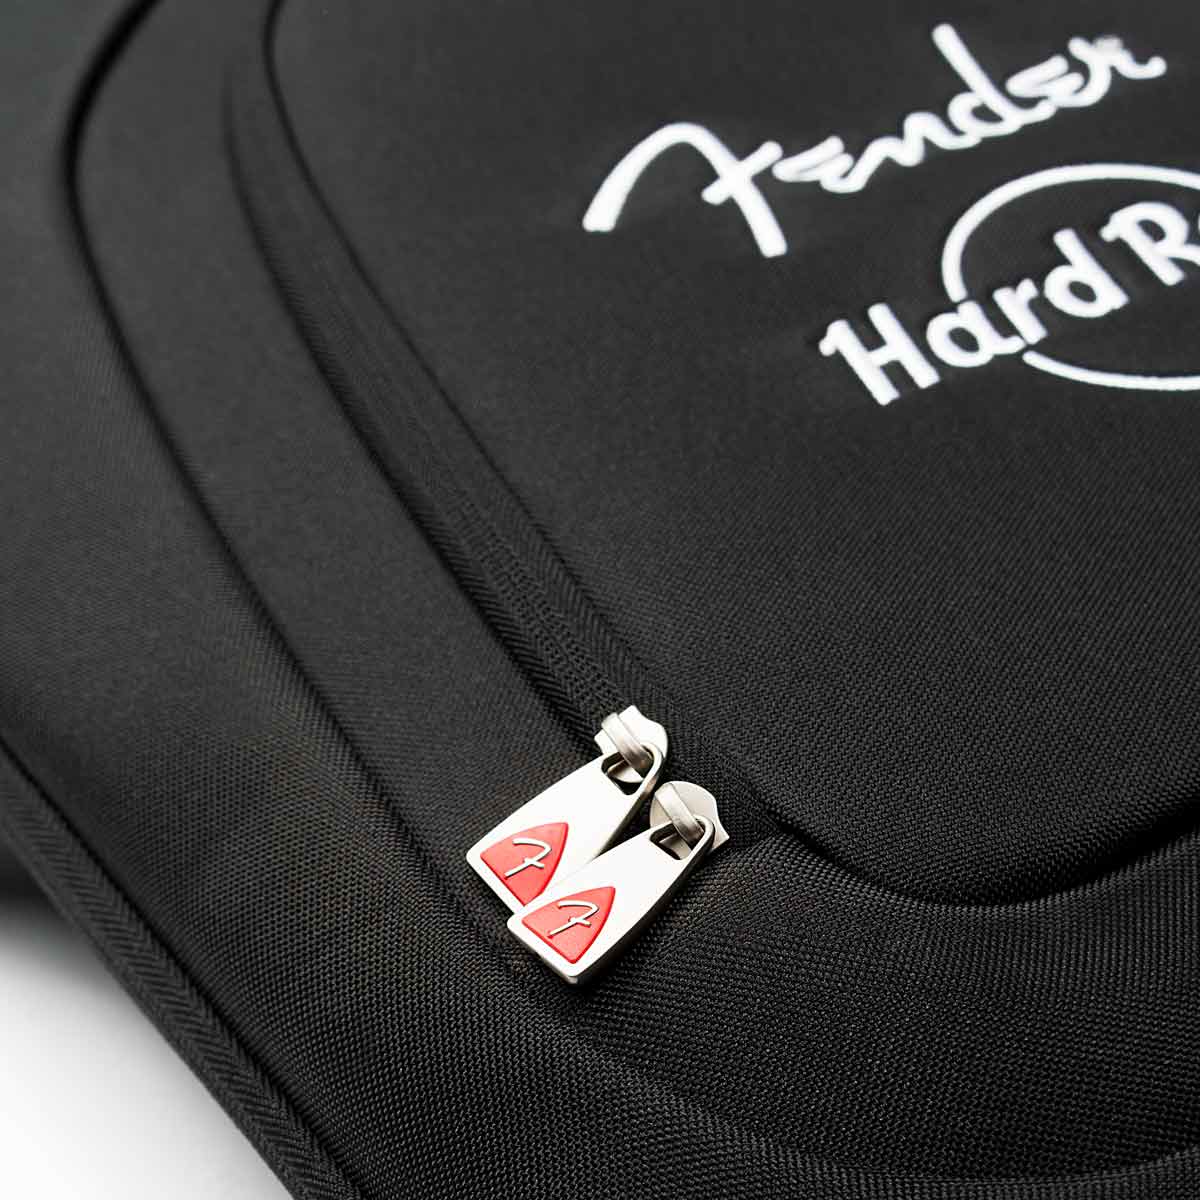 Fender x Hard Rock Electric Guitar Gig Bag in Black image number 2